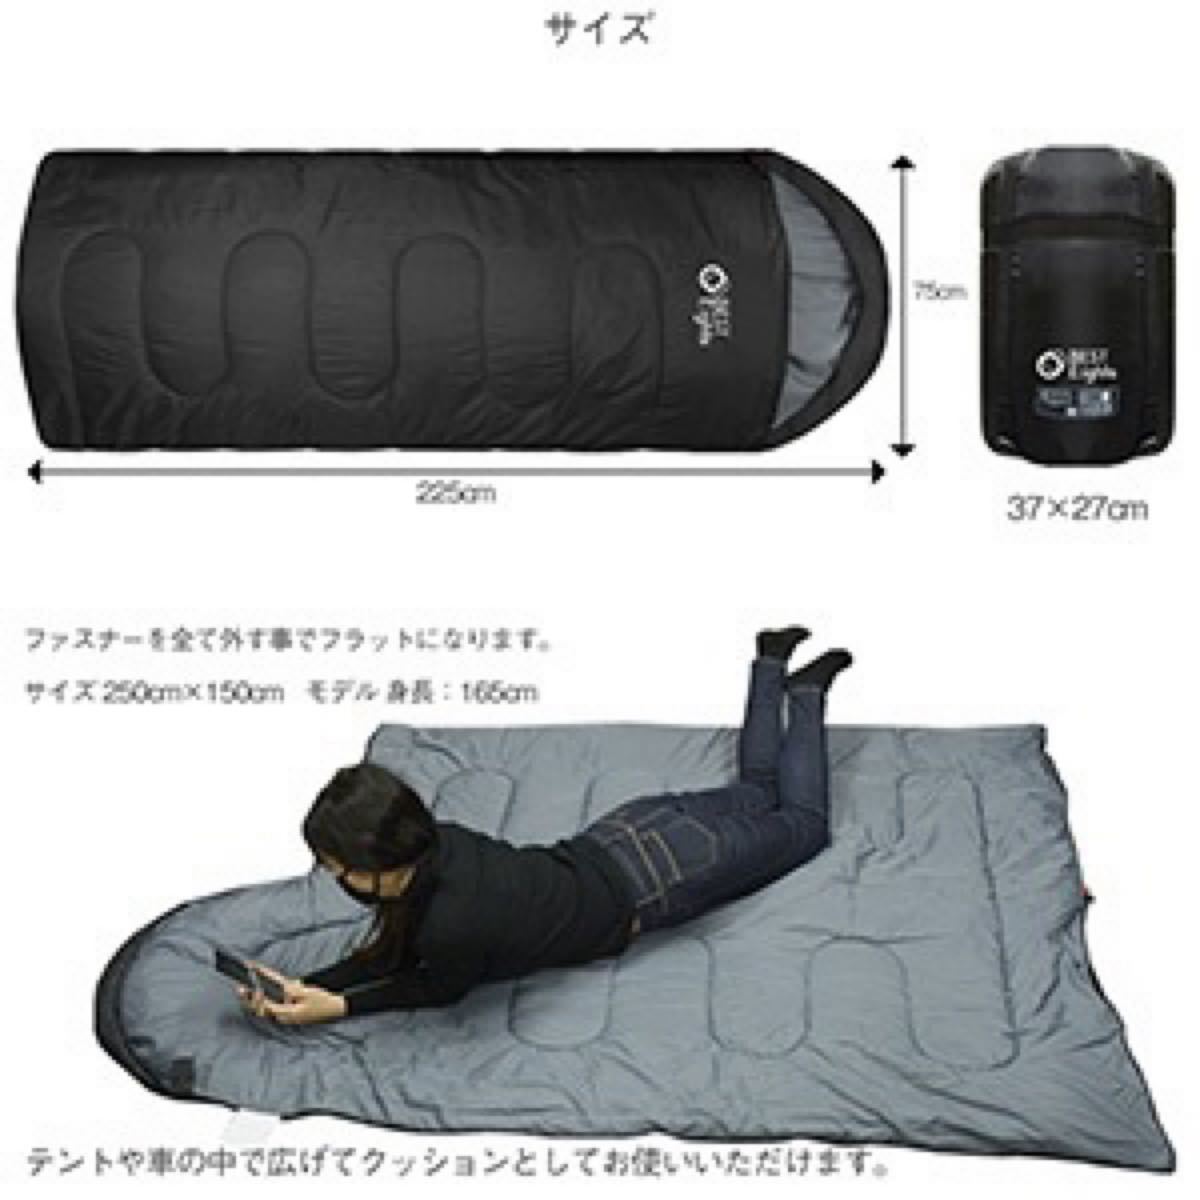 新品 寝袋 シュラフ コンパクト 封筒型 オールシーズン 最低使用温度-7℃